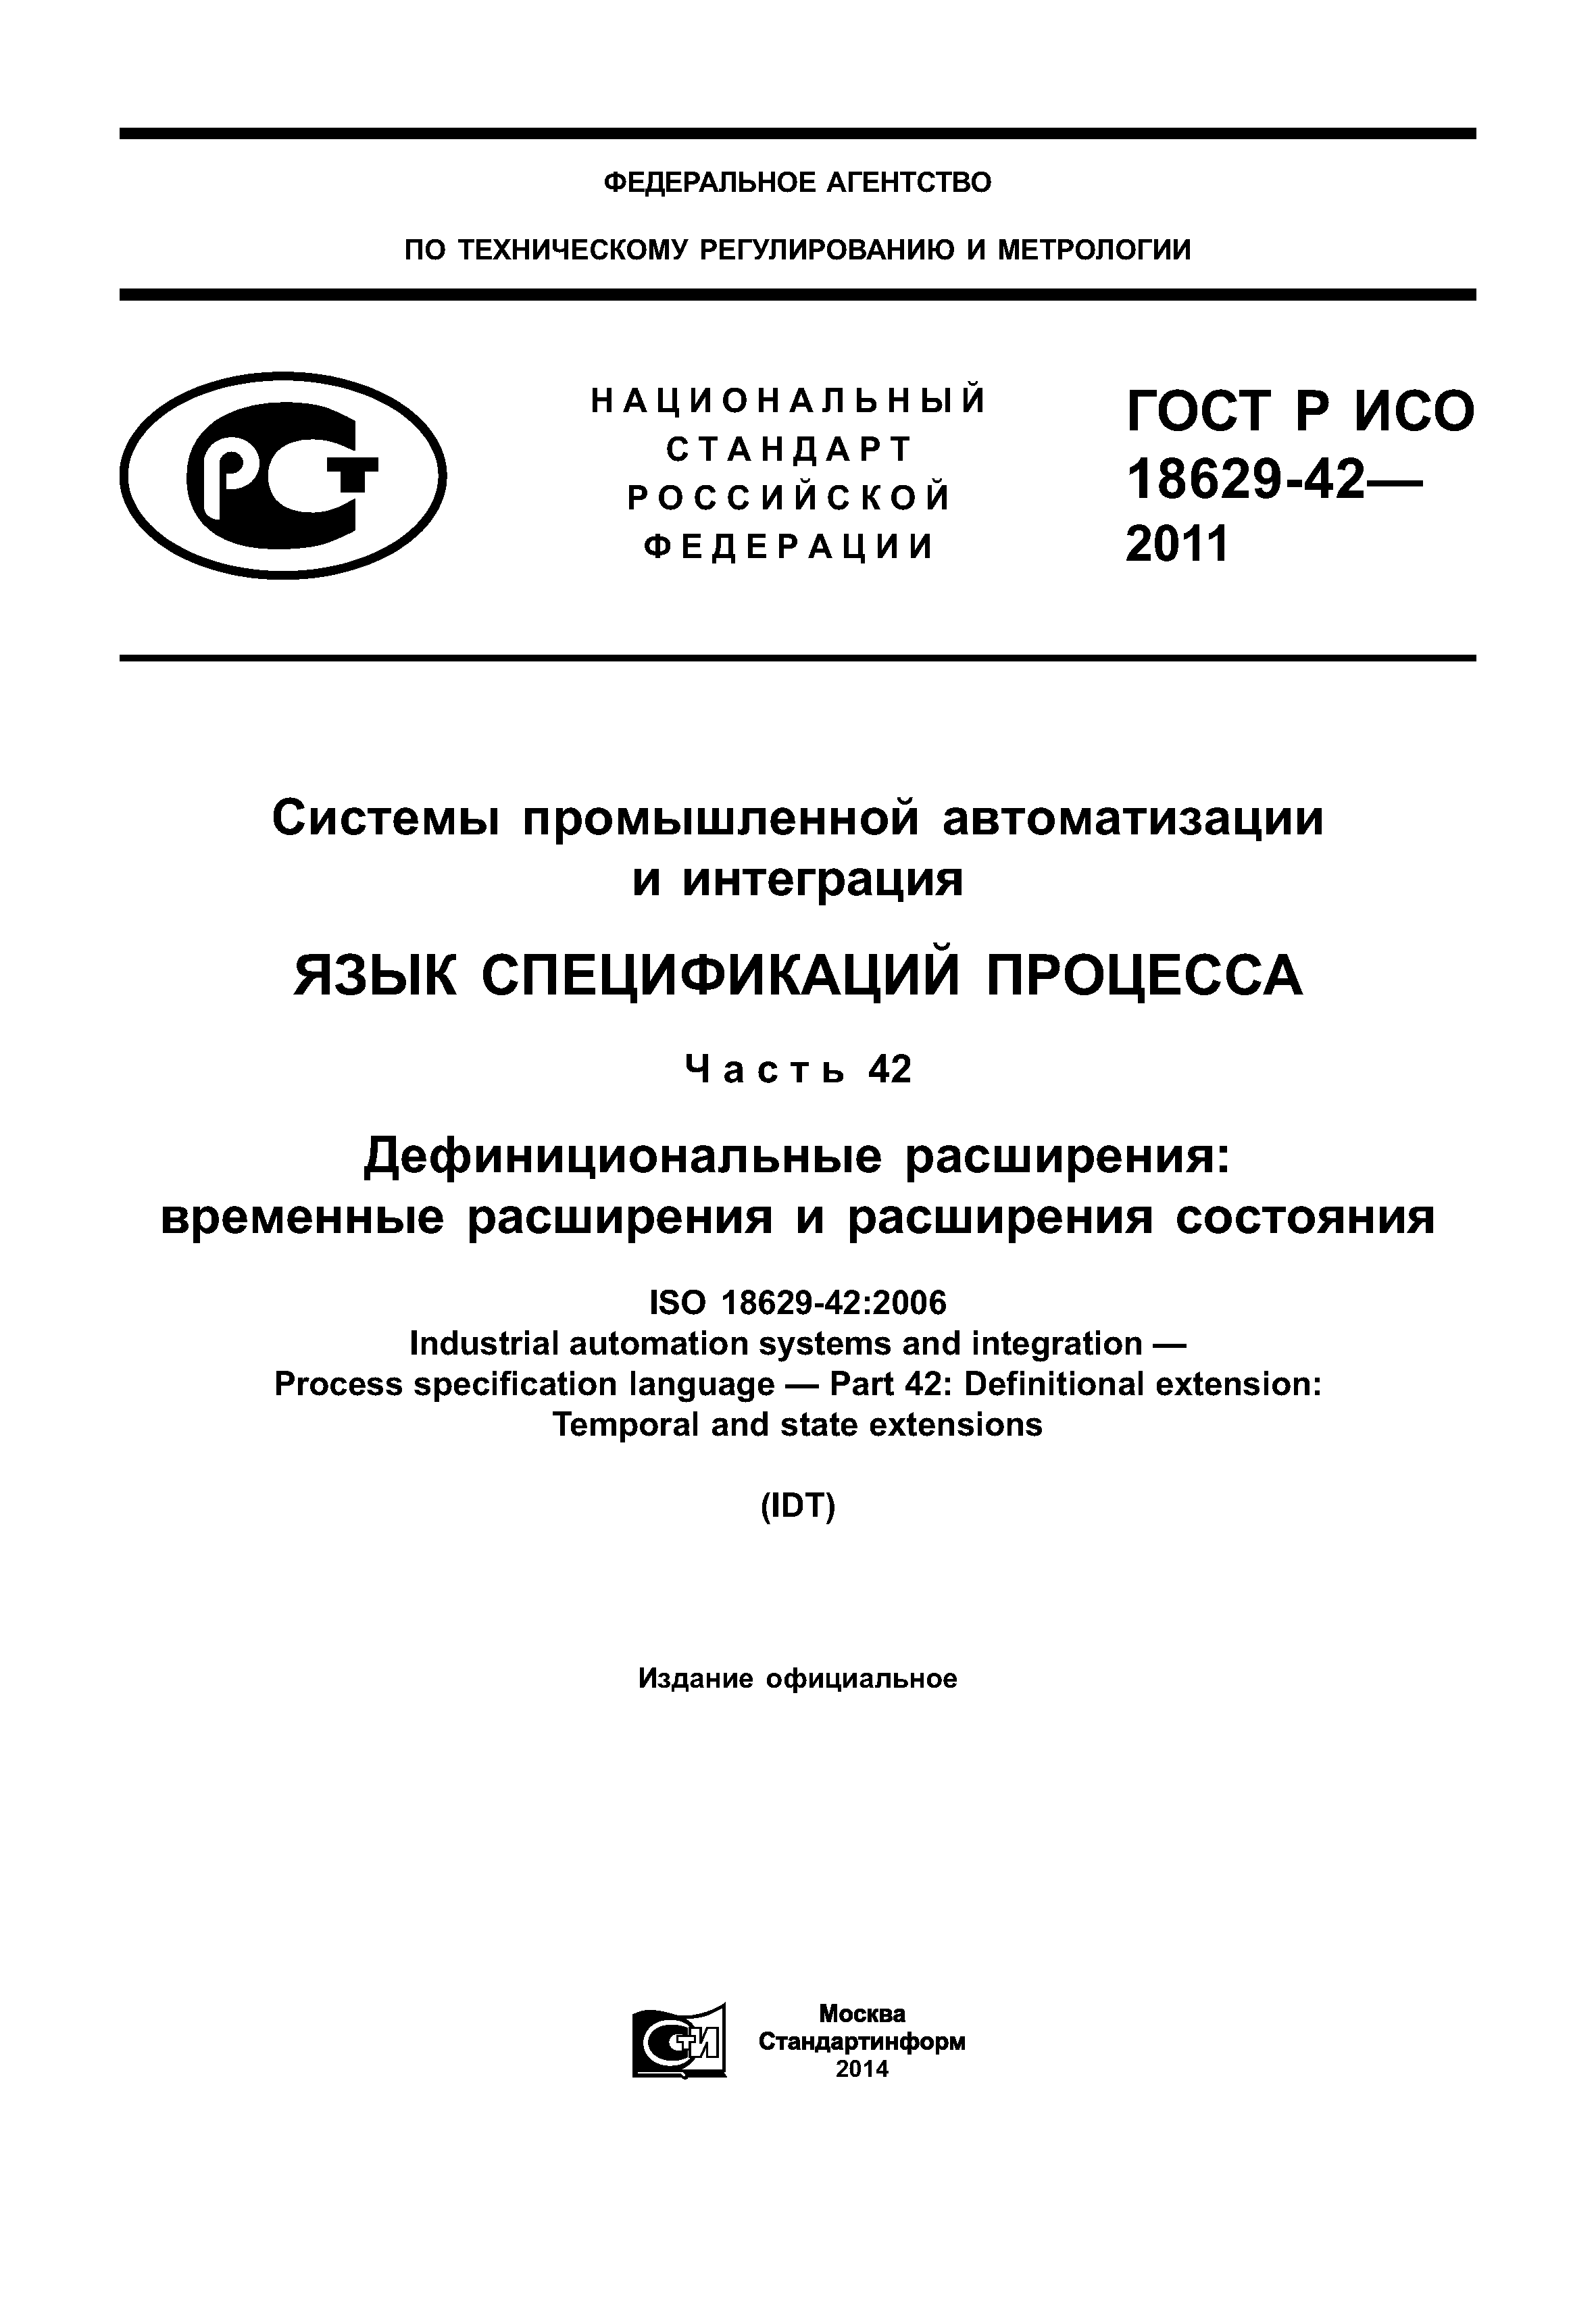 ГОСТ Р ИСО 18629-42-2011